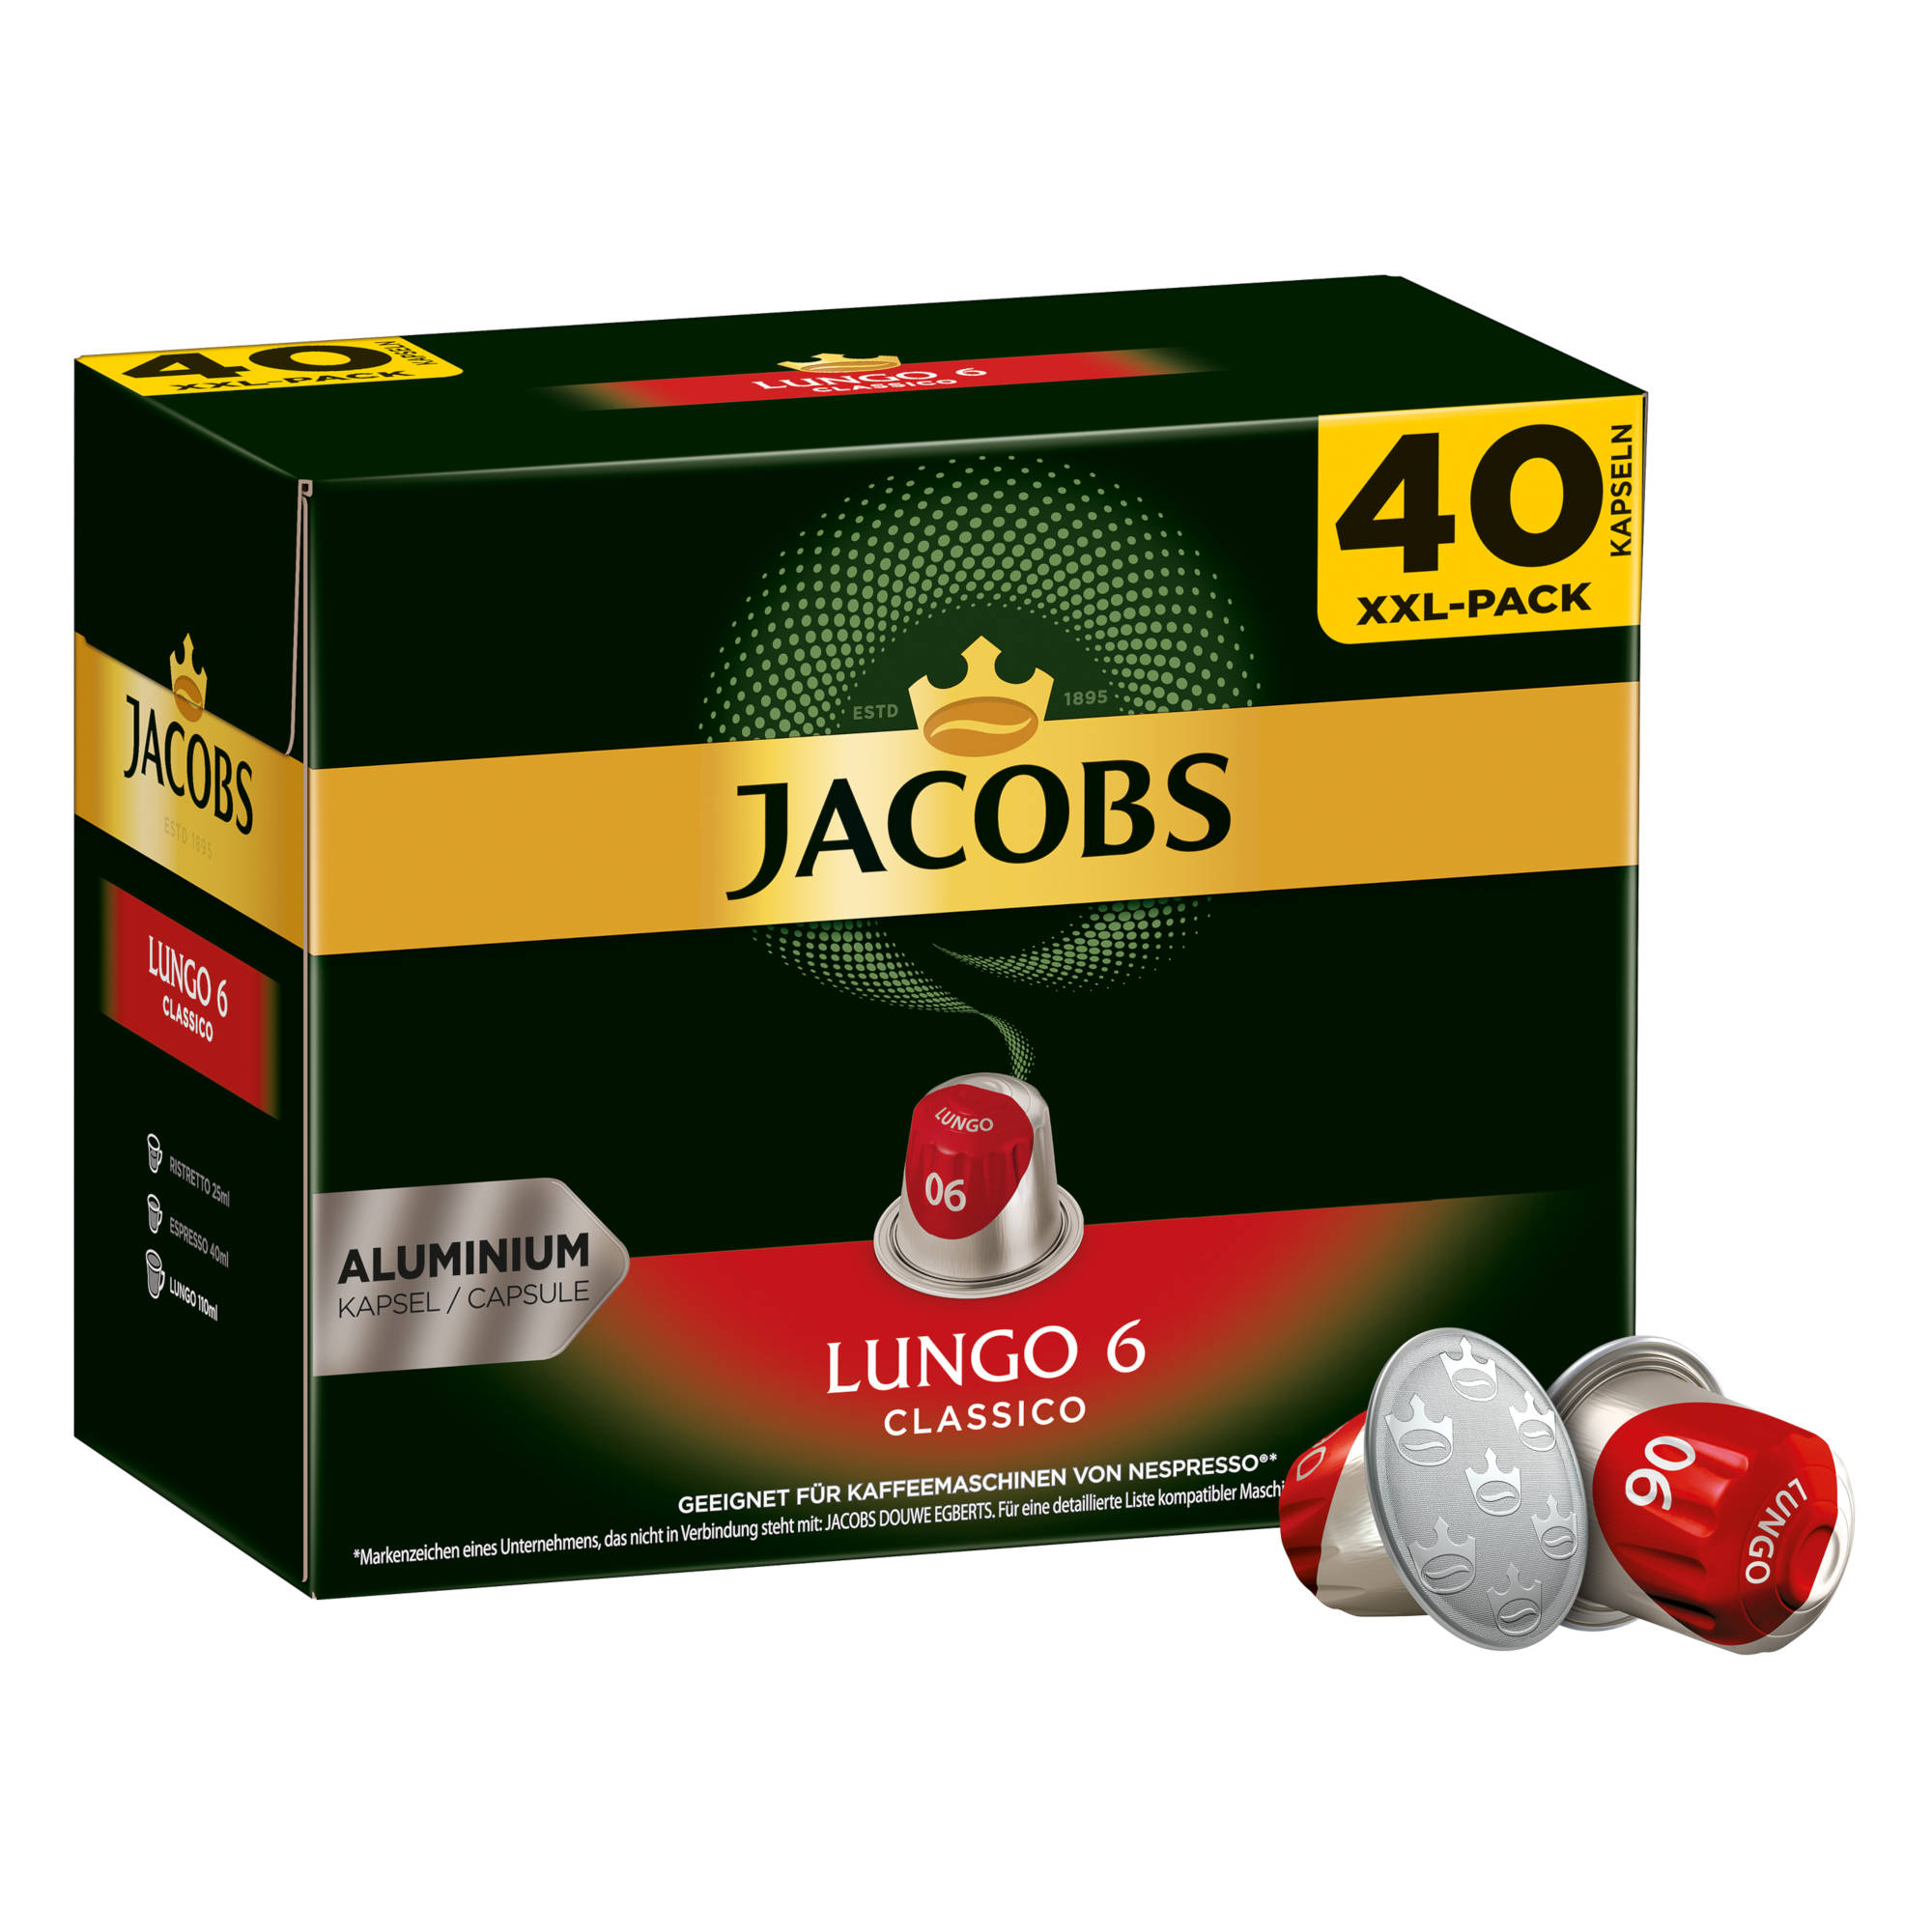 JACOBS Lungo 160 System) Classico kompatible Nespresso®* 8 Lungo + XXL-Packs Intenso (Nespresso Kaffeekapseln 6